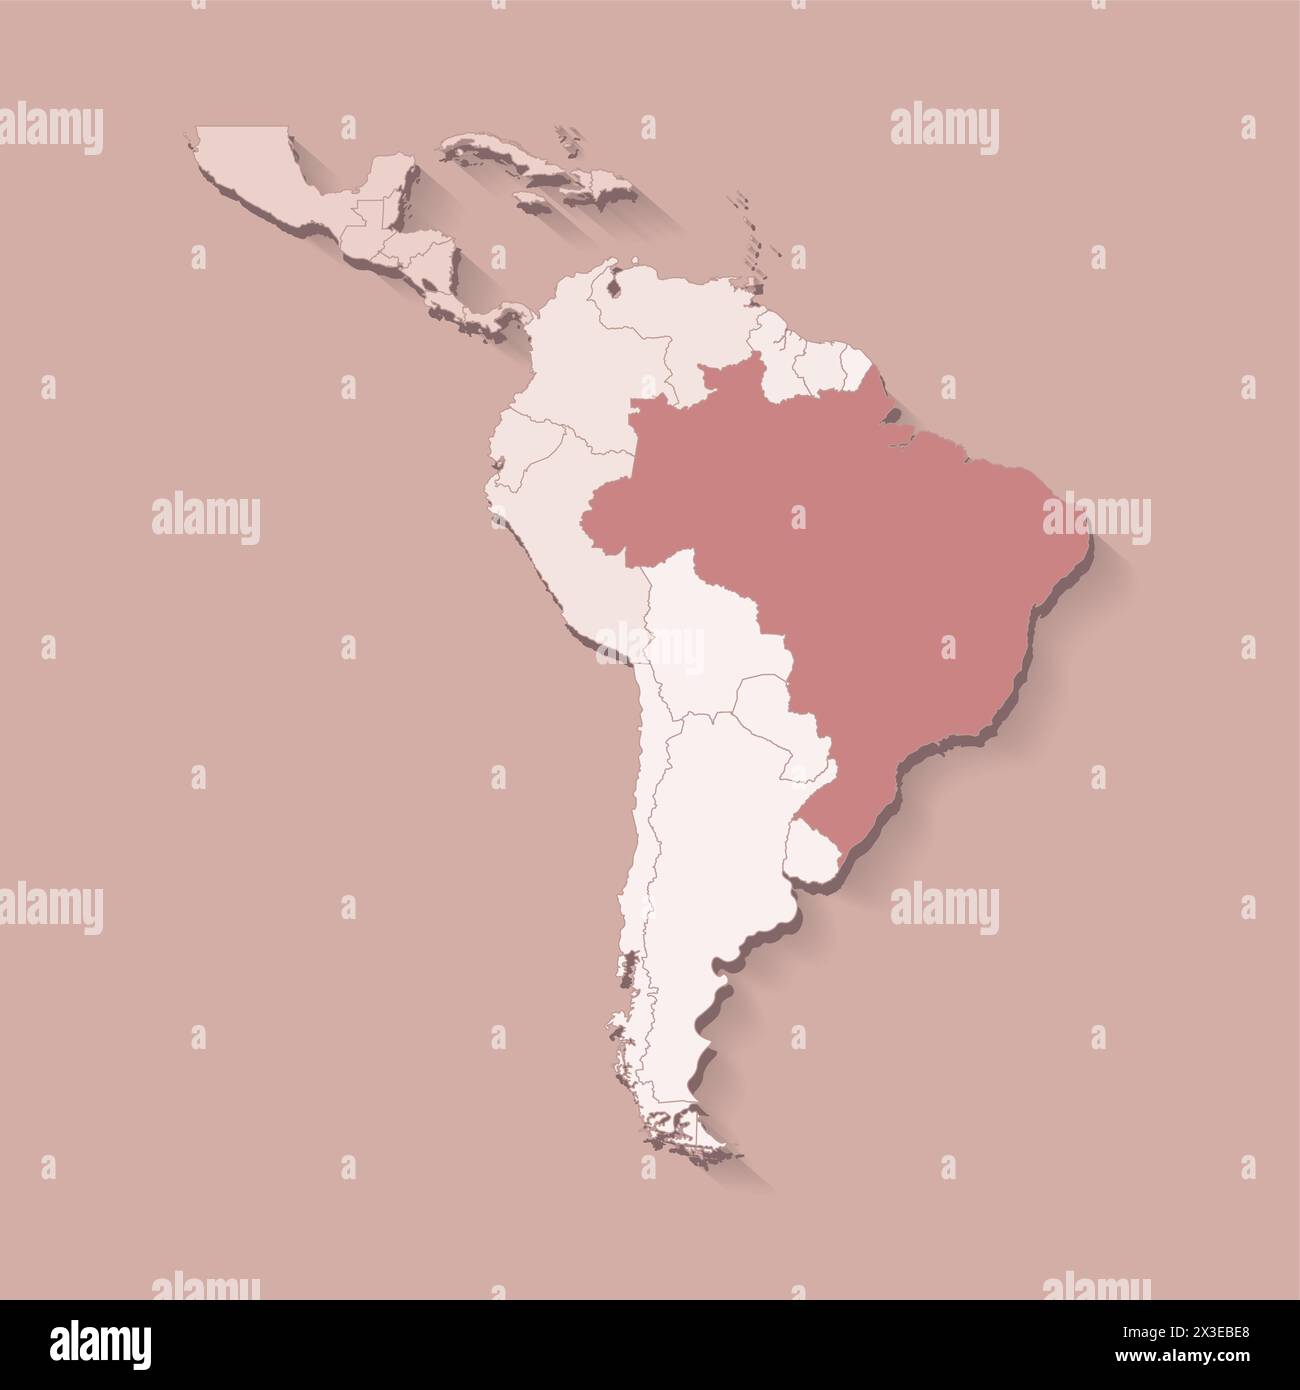 Illustration vectorielle avec la terre d'Amérique du Sud avec les frontières des états et le pays marqué Brésil. Carte politique en couleurs brunes avec des régions. Beige backgr Illustration de Vecteur